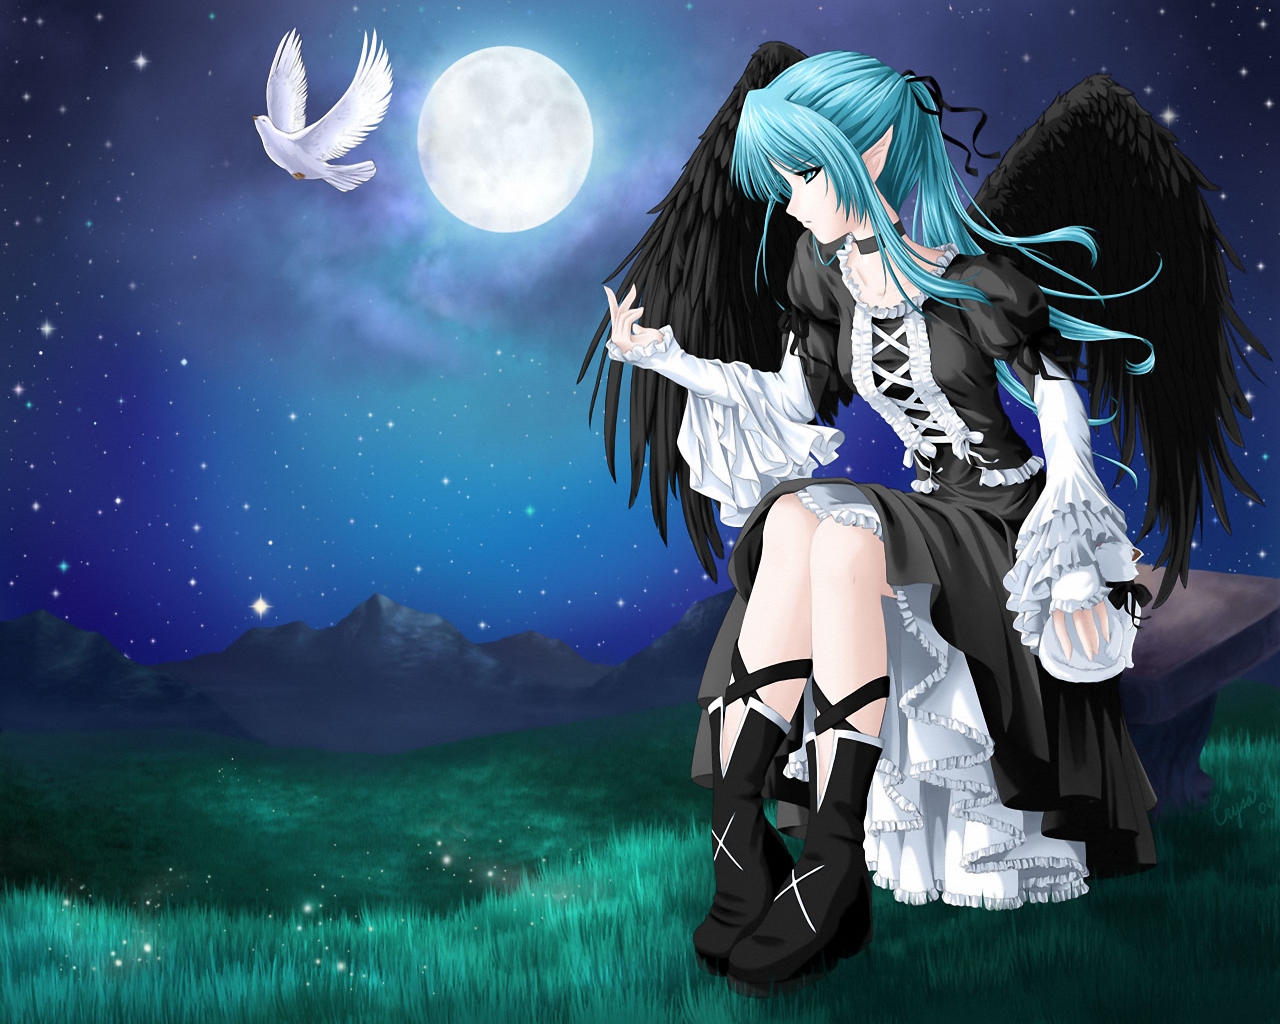 3d обои Девушка с чёрными крыльями лунной ночью сидит на скамейке и смотрит на улетающего с её руки белого голубя  ночь # 67439